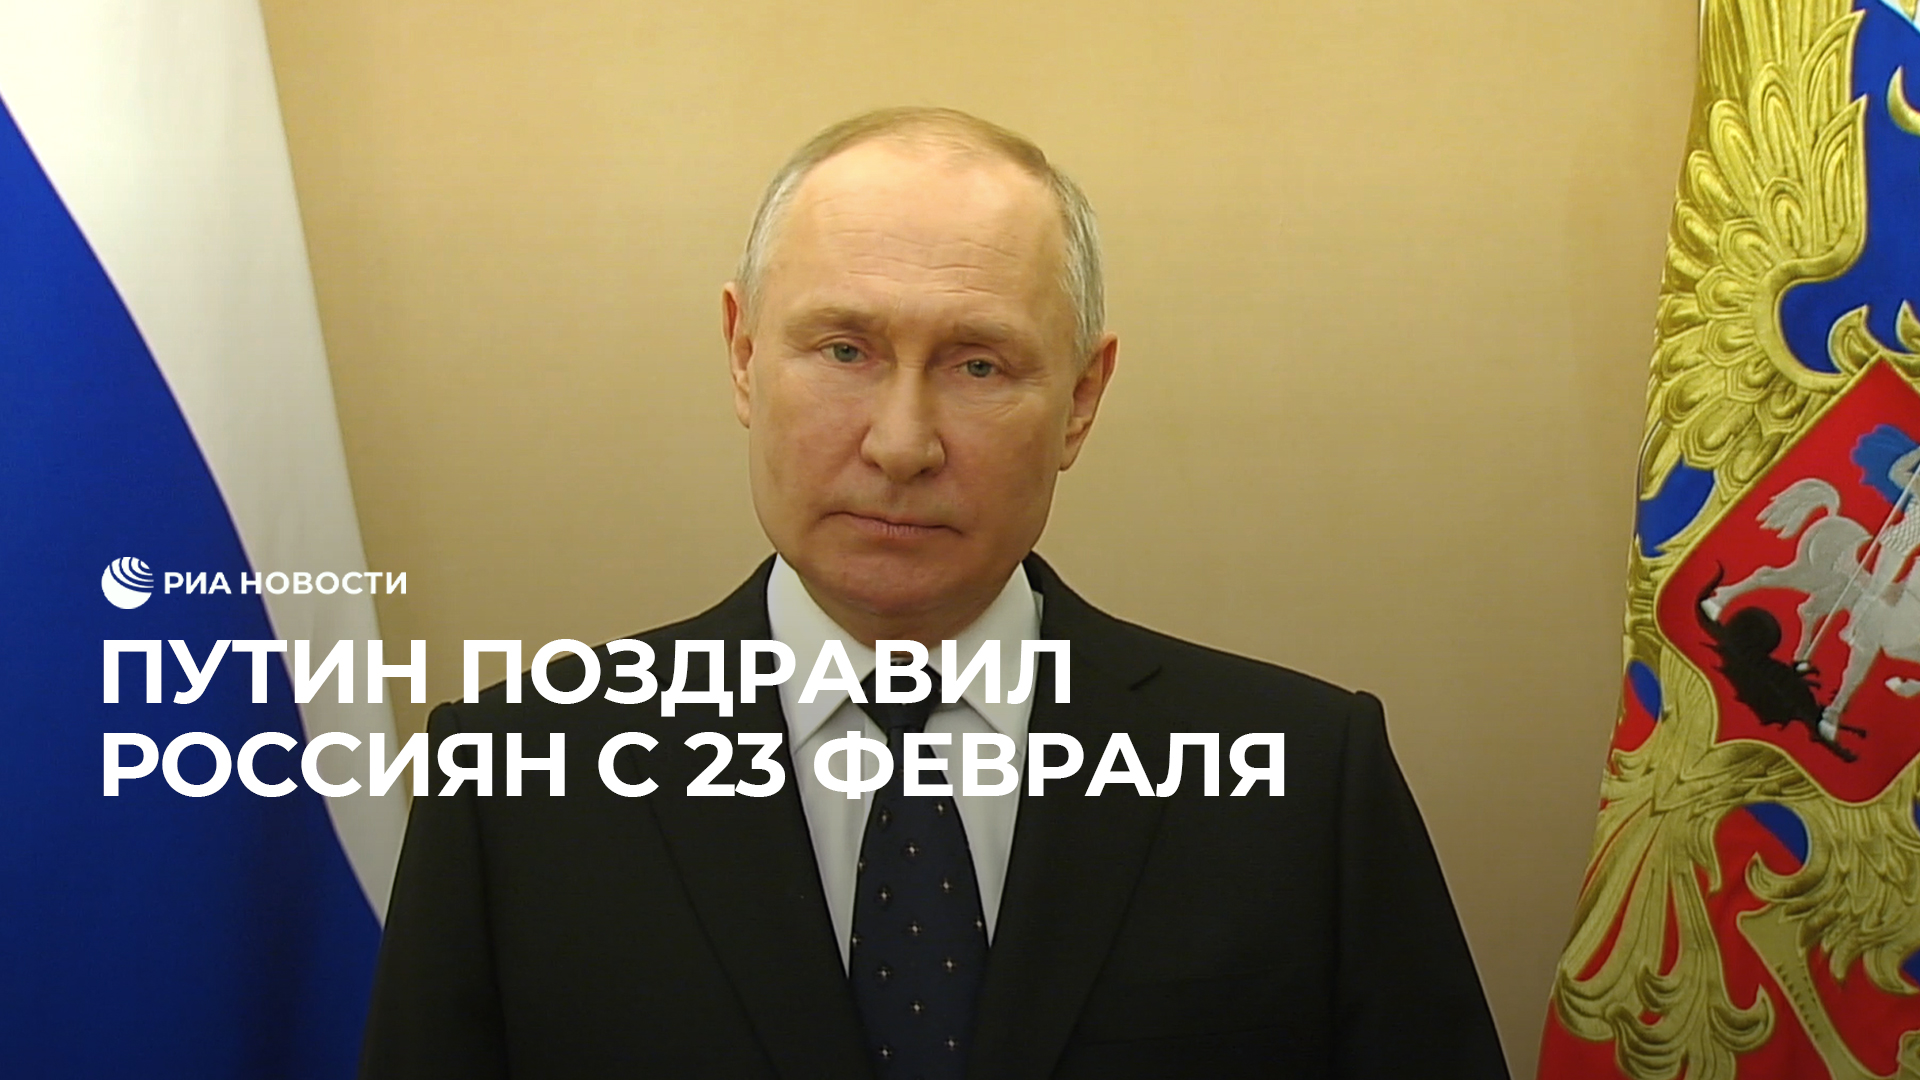 Путин поздравил россиян с 23 февраля